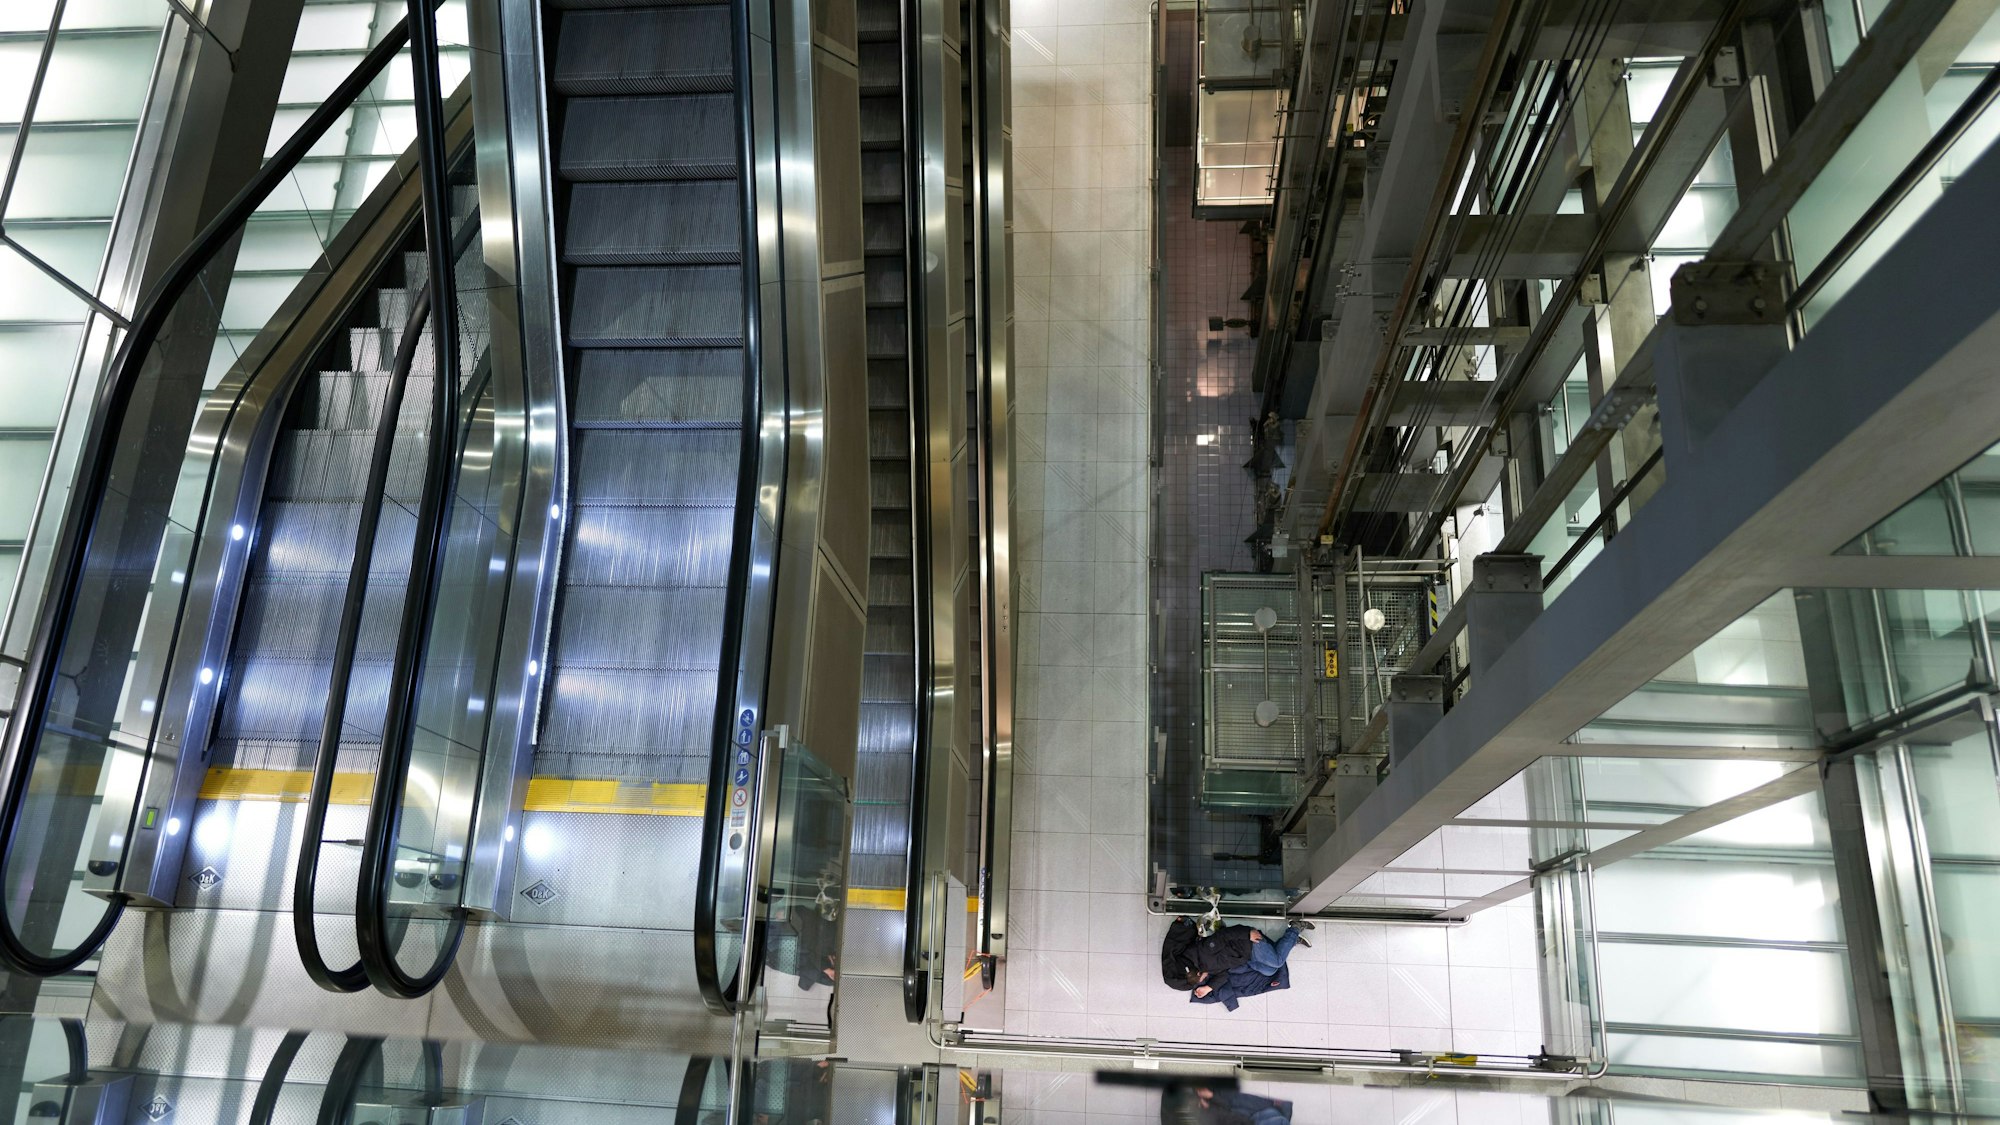 09.02.2023, Flughafen Köln-Bonn: Wir dokumentieren, was nachts auf dem Flughafen passiert. Die verschiedenen Ebenen von innen fotografiert im Terminal 2. Unten schläft ein Reisender neben dem Aufzug.